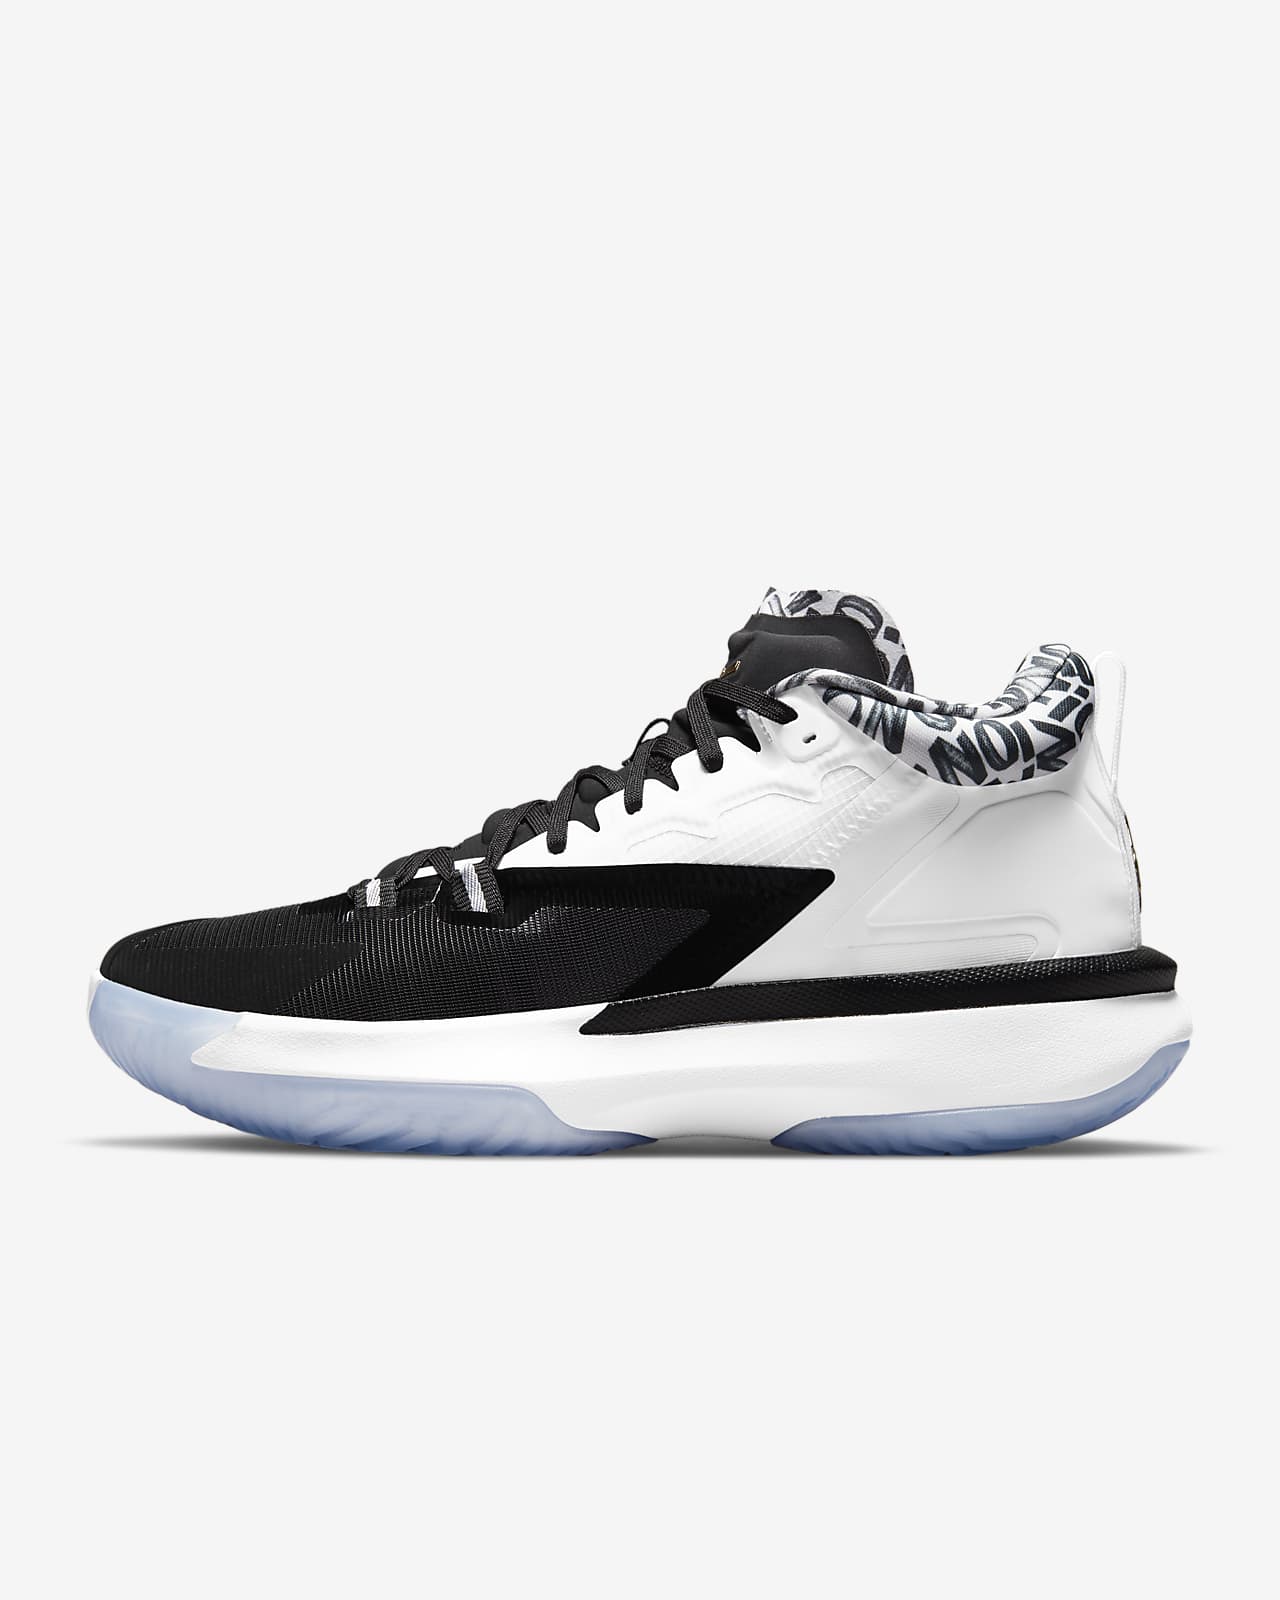 Zion 1 Basketball Shoe. Nike LU